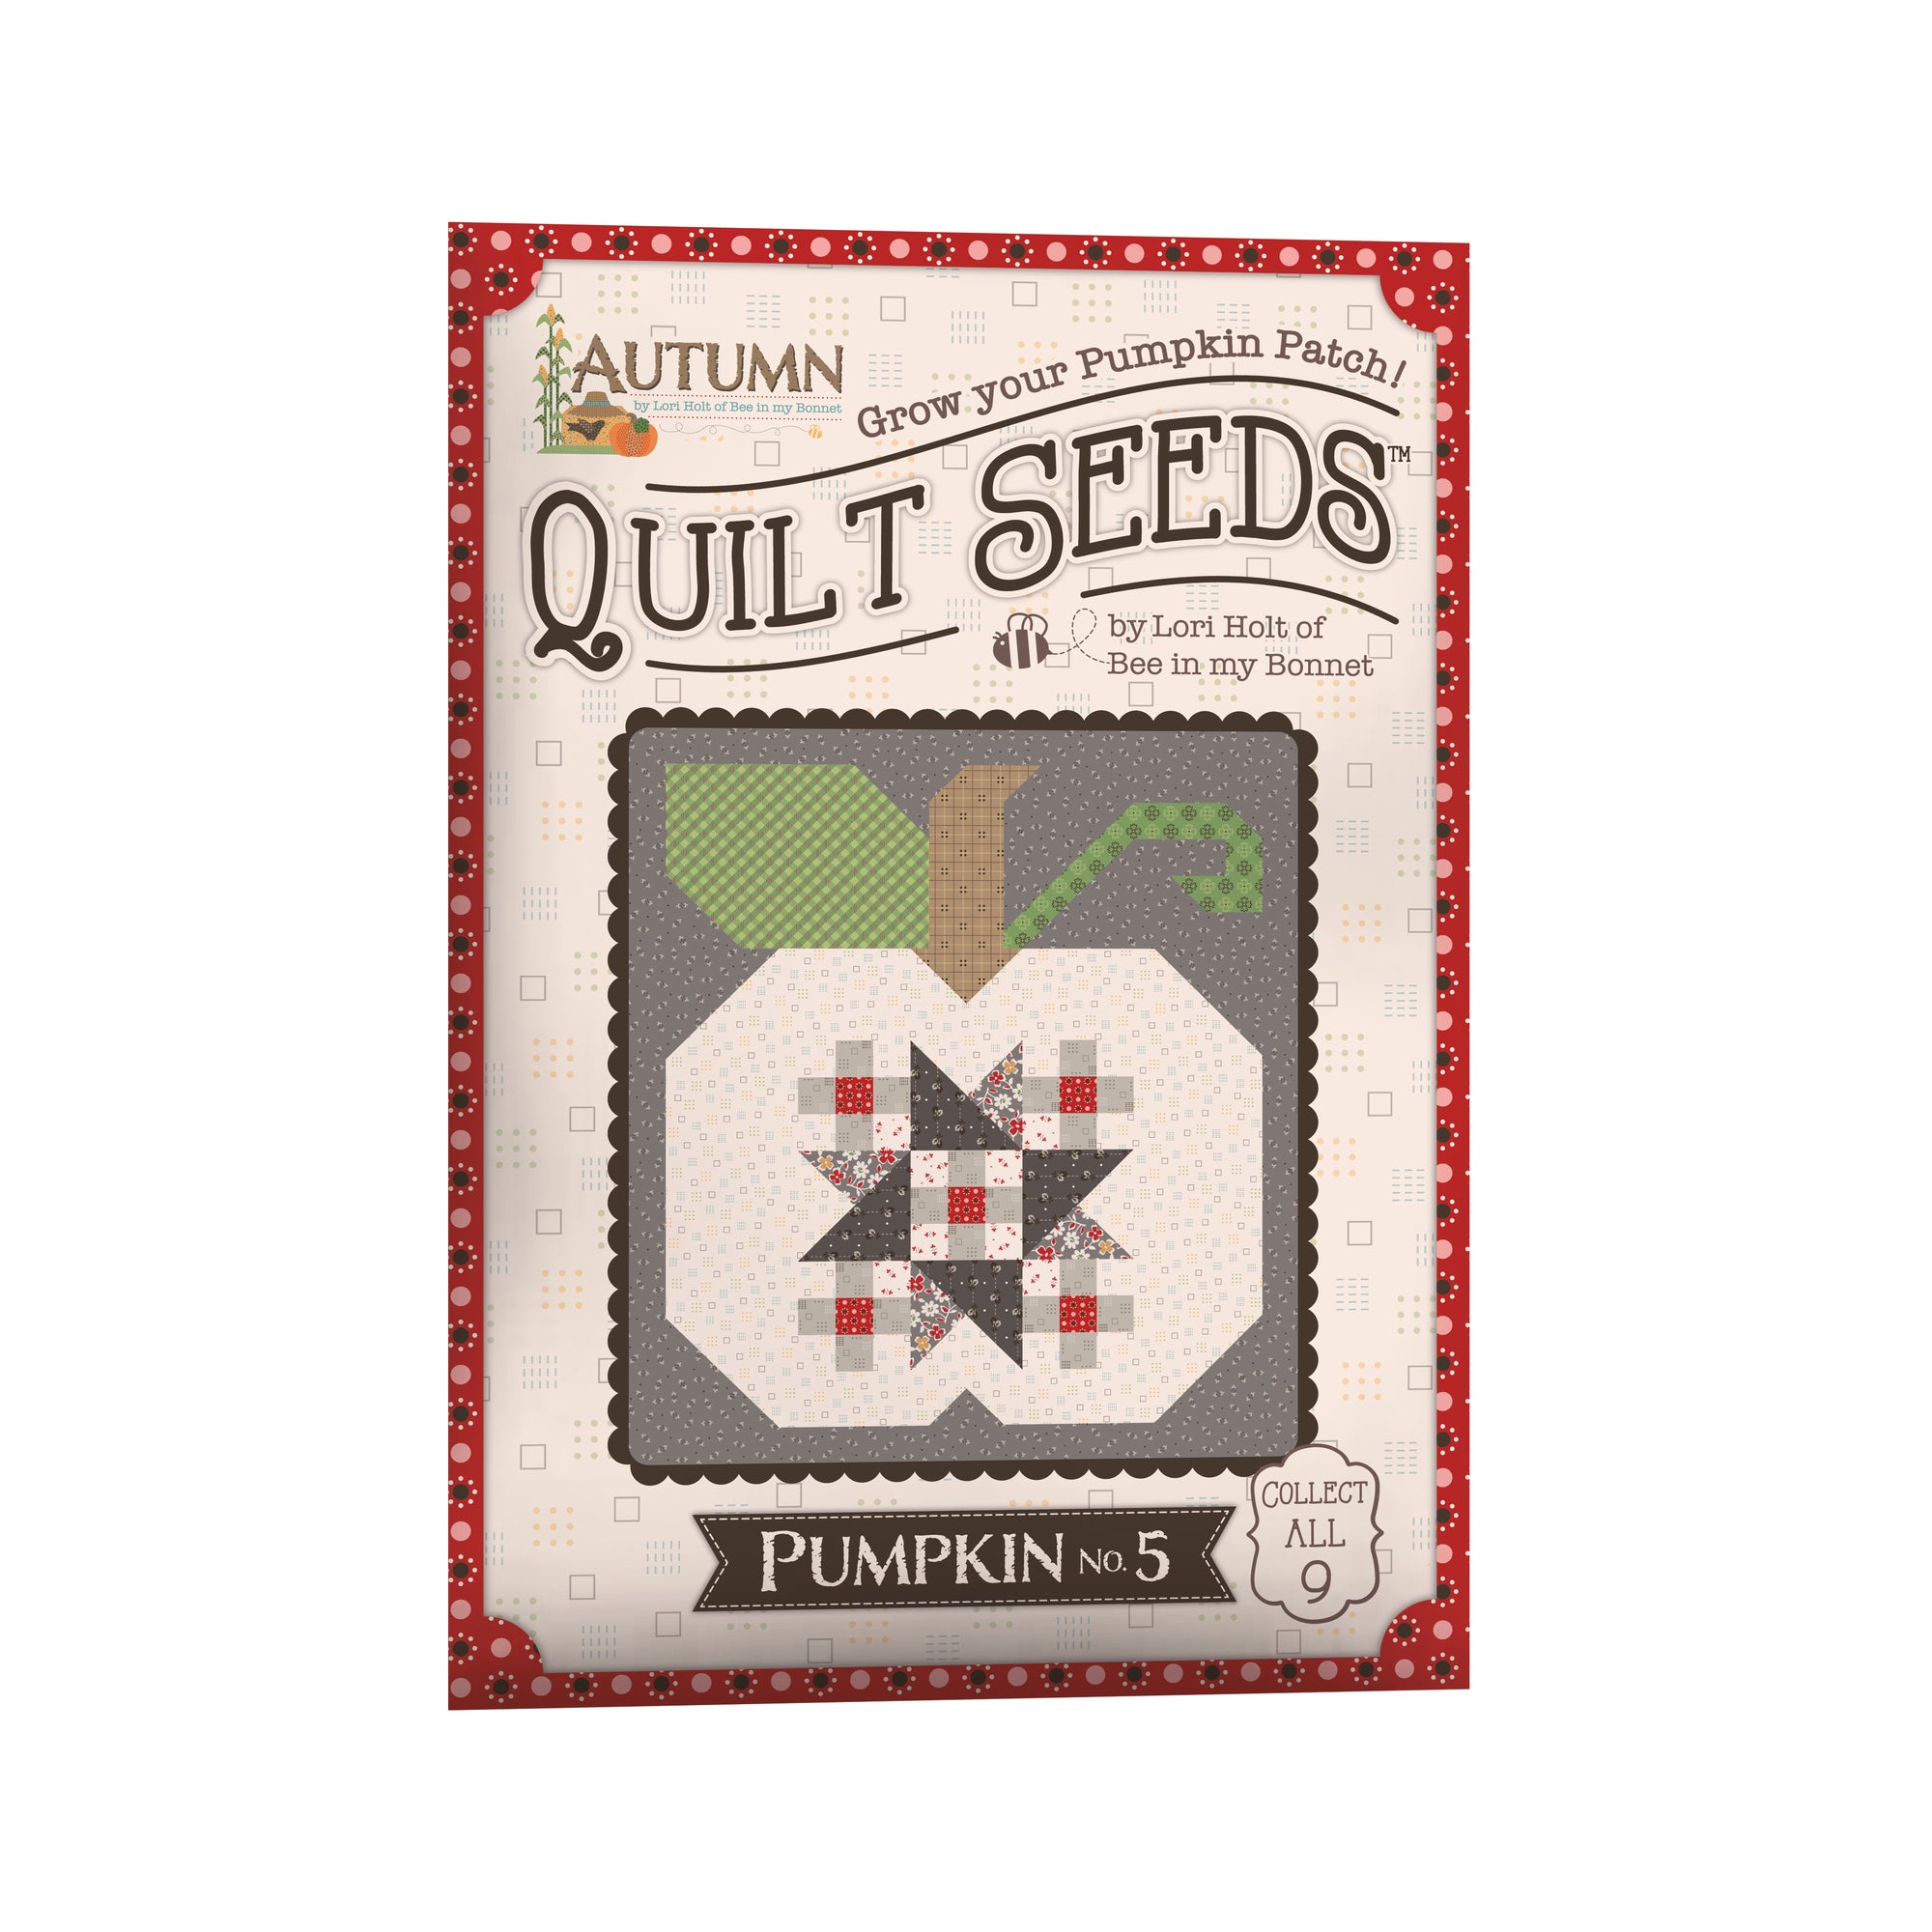 Lori Holt Autumn Quilt Seeds™ Pattern Pumpkin No 5